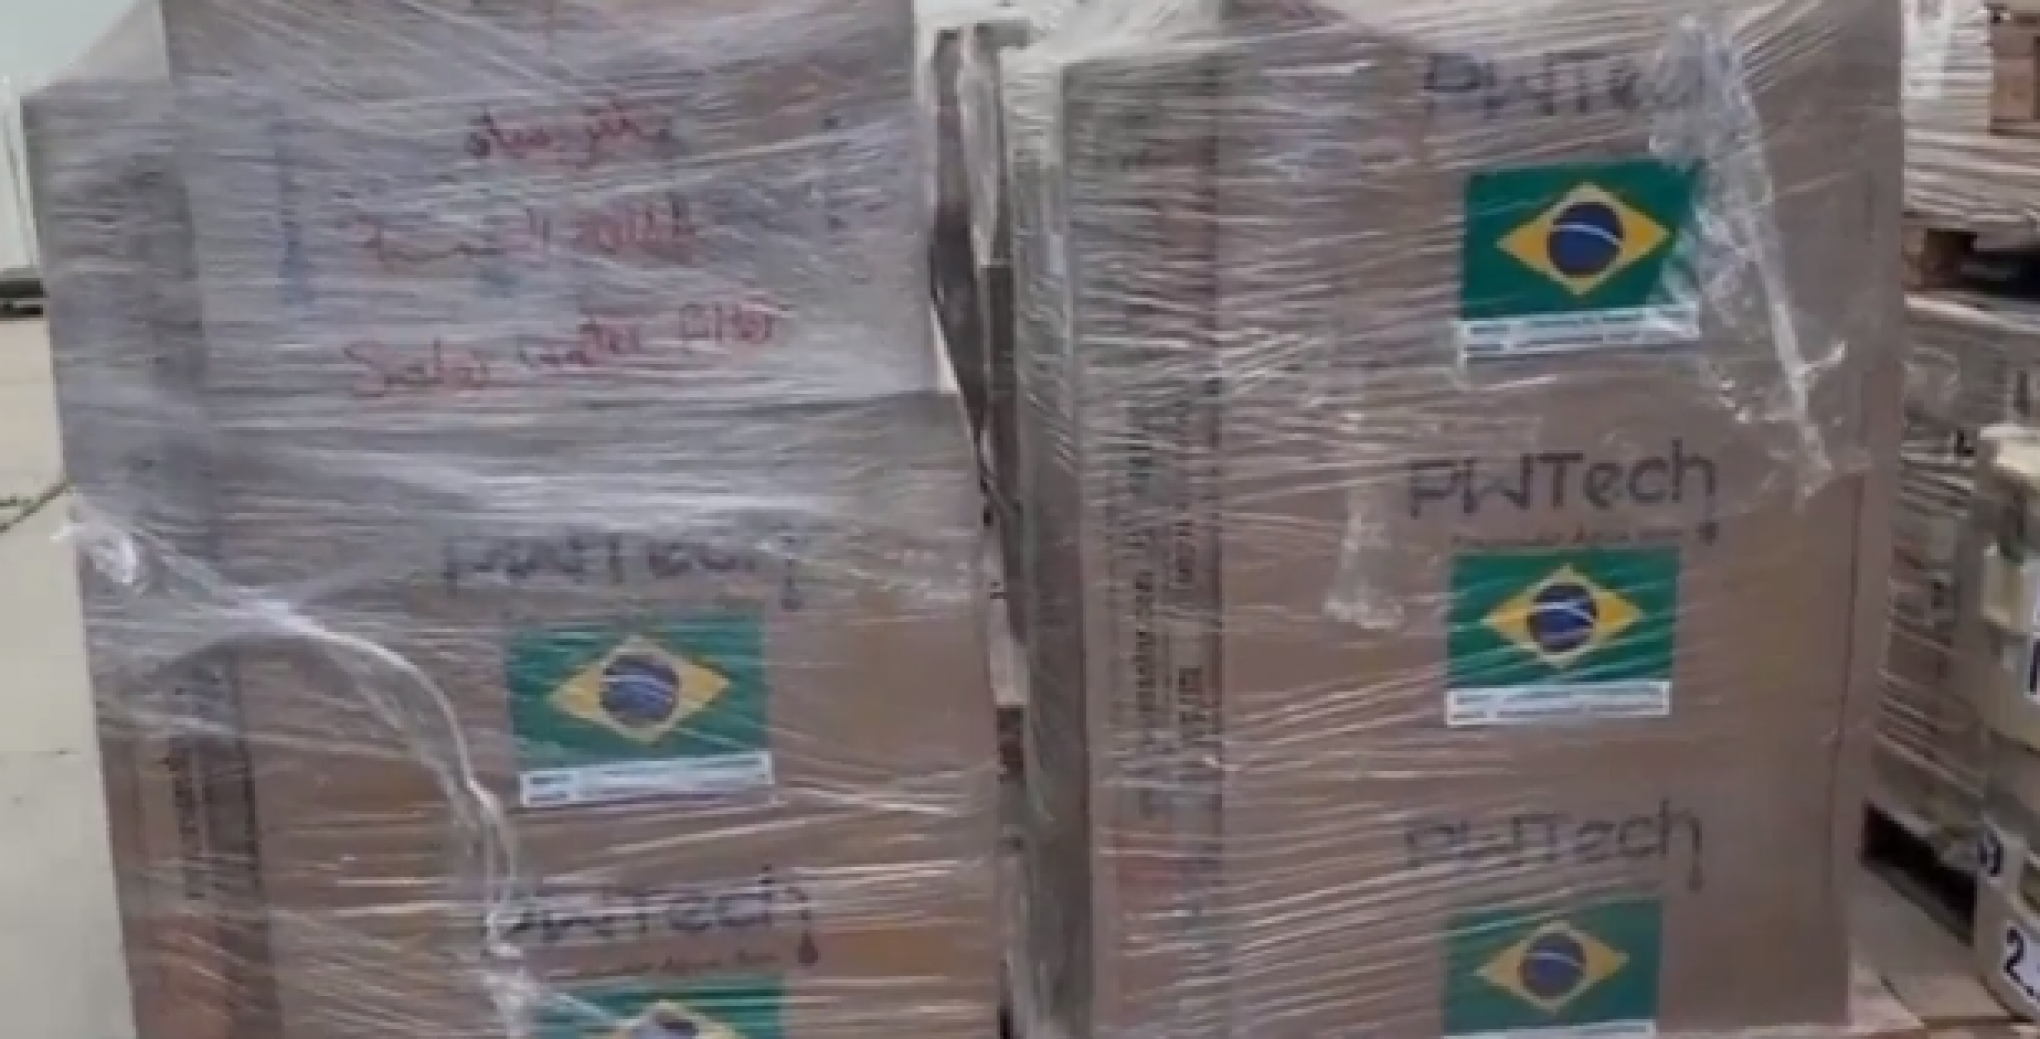 Brasil envia ajuda humanitária para a Faixa de Gaza e carga é barrada pelo exército de Israel